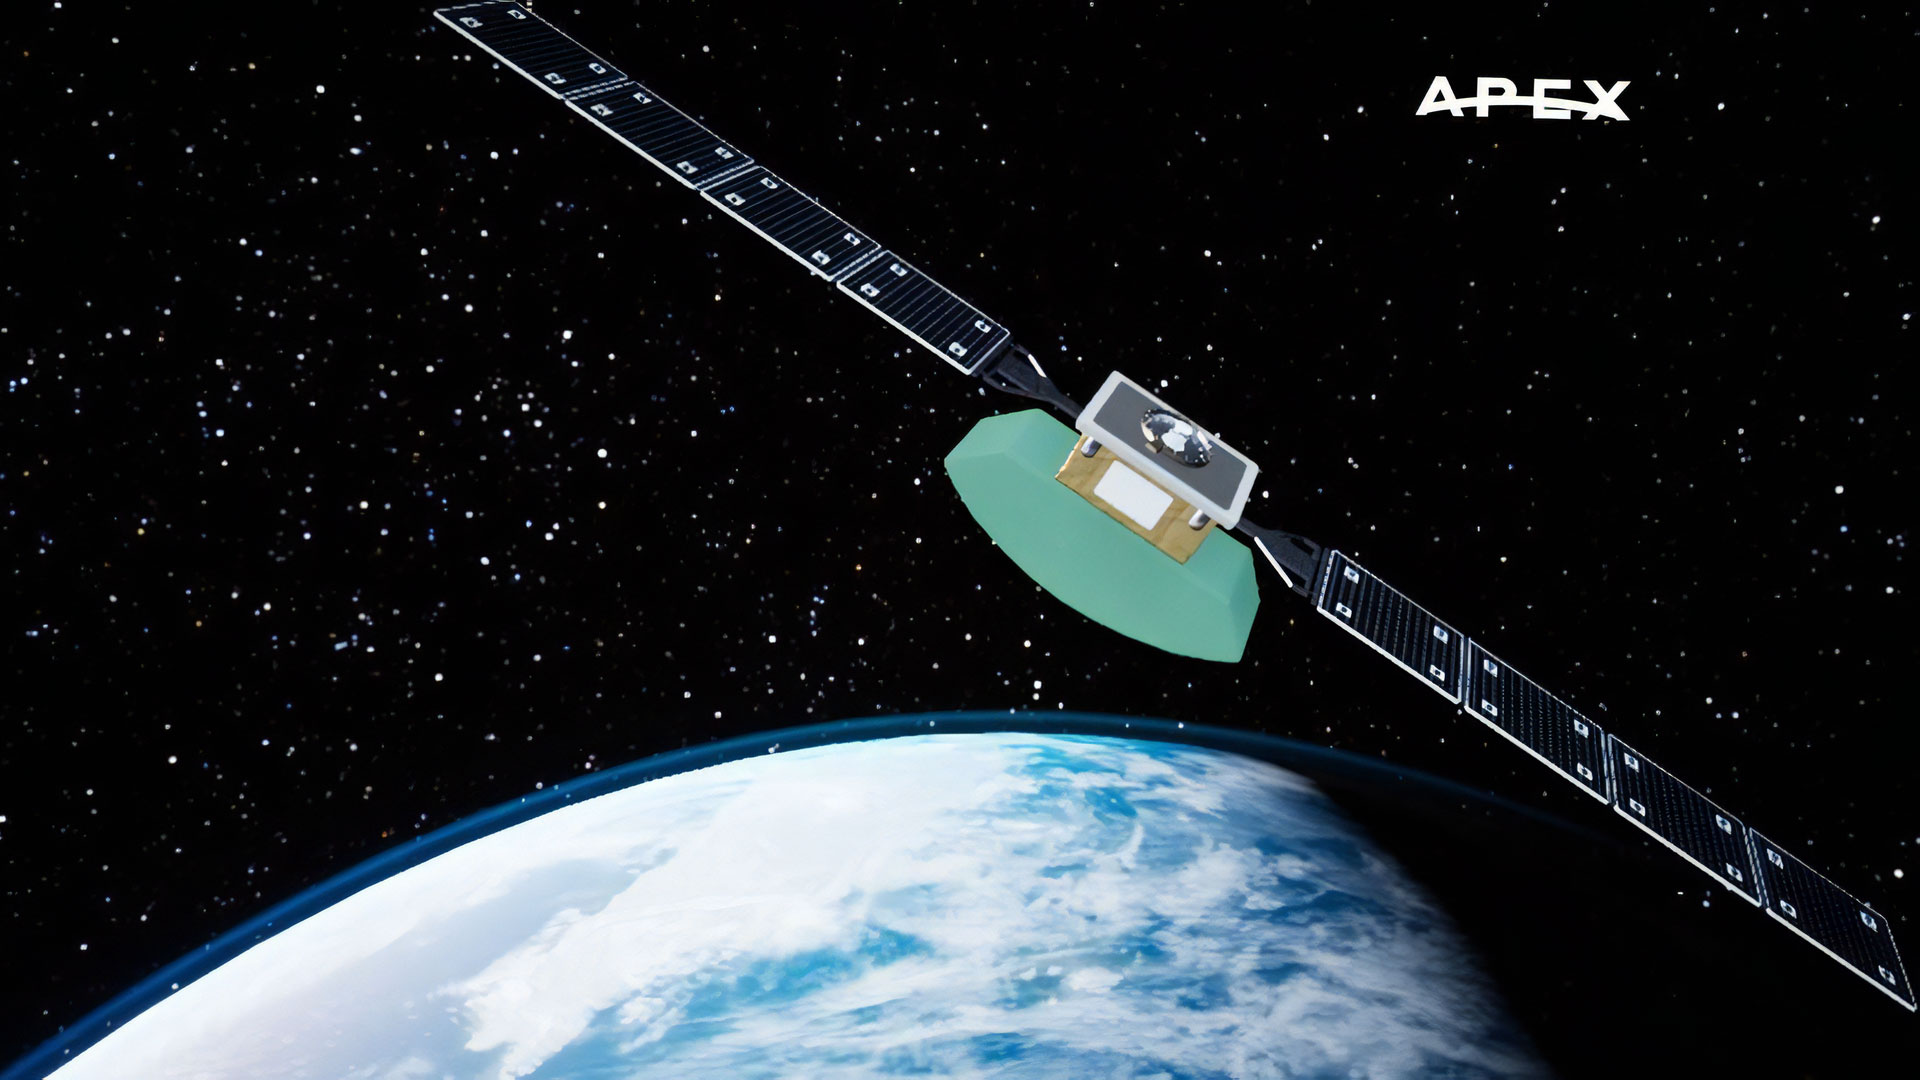 Apex Space inizia raccogliendo 7,5 milioni di $ nel primo round